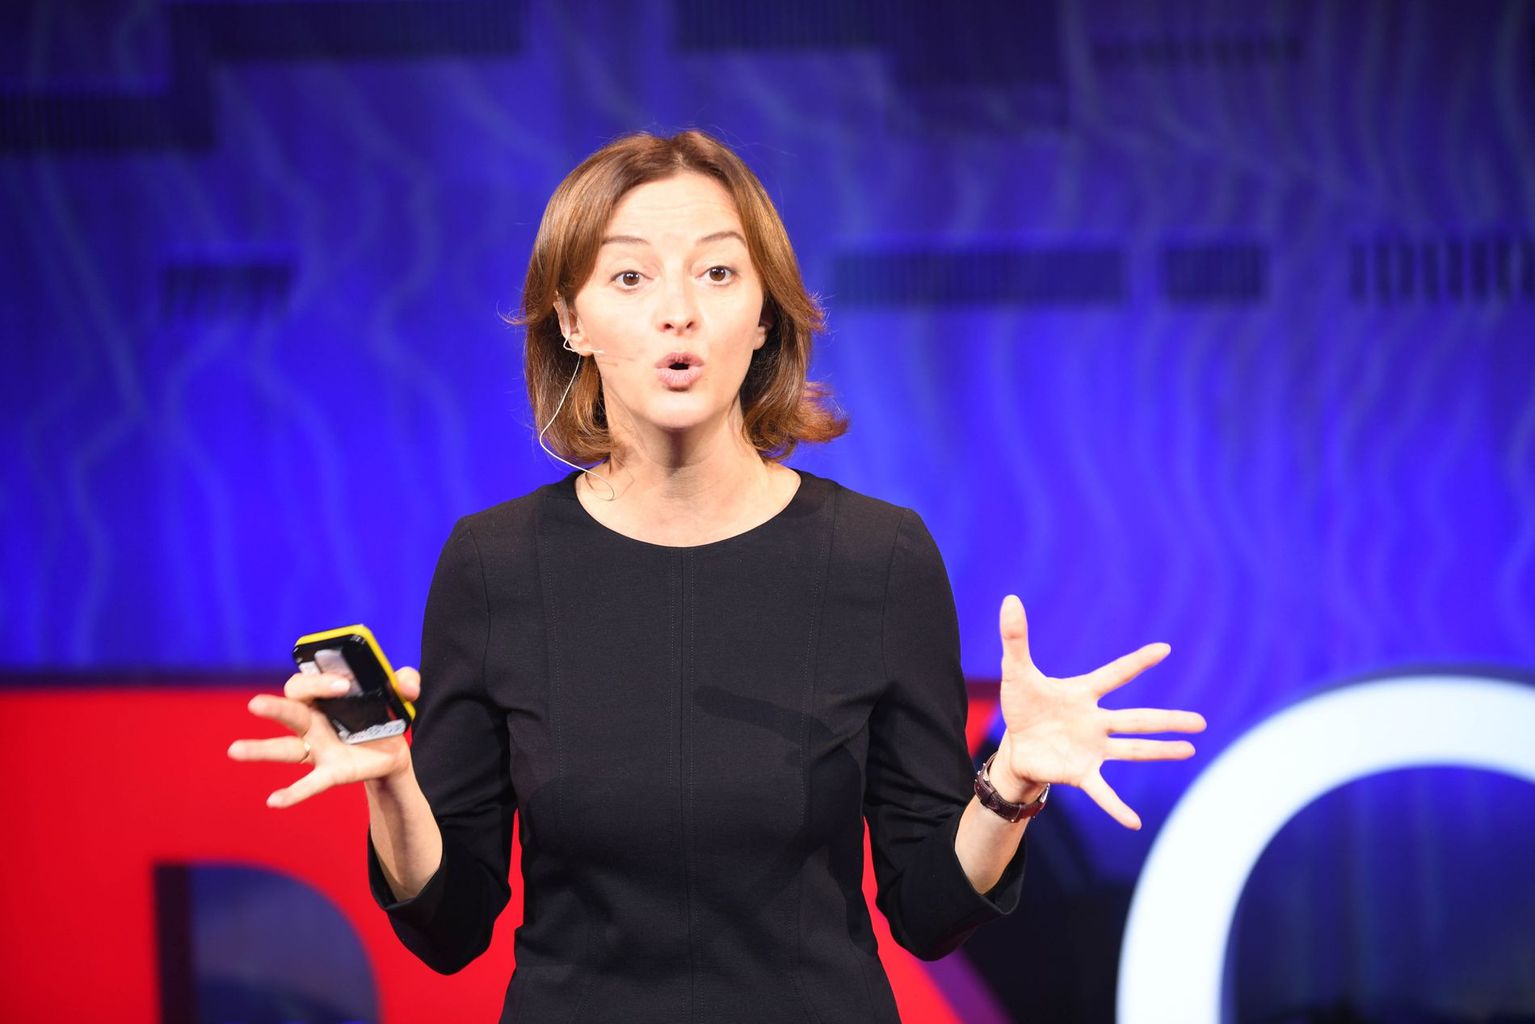 Prof. Laura Baudis gehört zu den Physikerinnen, die nicht nur Spitzenforschung betreiben, sondern auch die Gabe haben, die Ergebnisse wirkungsvoll einer breiten Öffentlichkeit zu vermitteln. Im Bild: Auftritt bei einem TED-Talk am CERN.